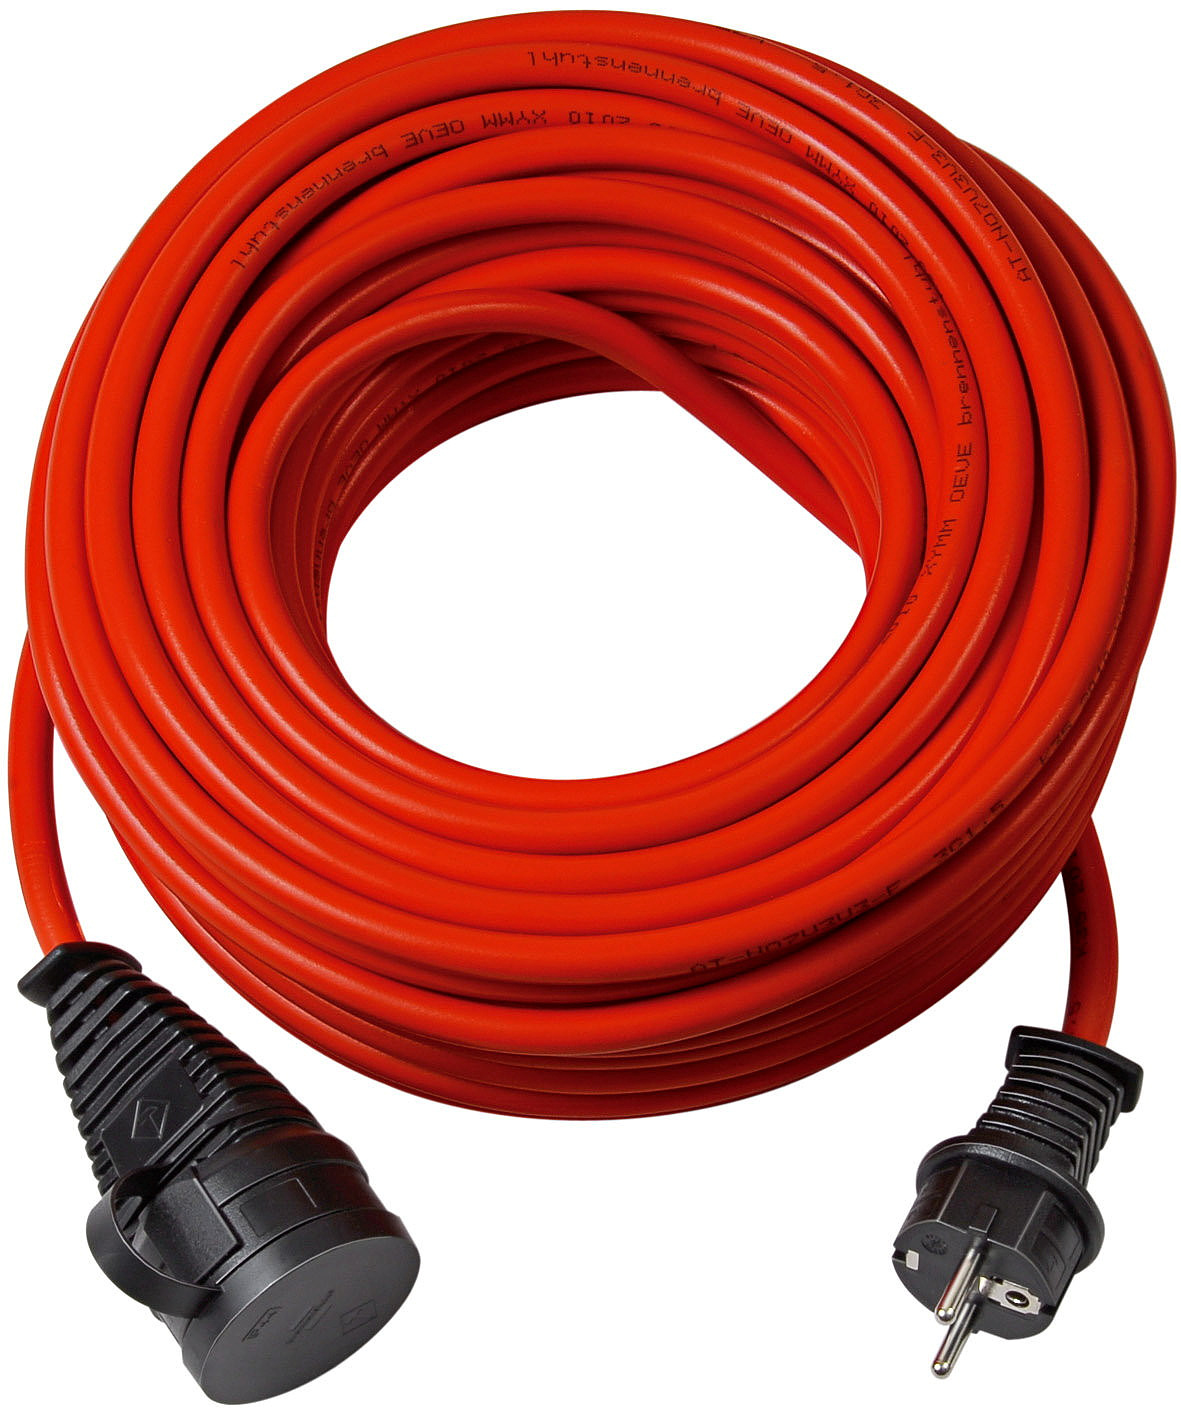 BREMAXX® Outdoor-Verlängerungskabel (25m Kabel in rot, für den kurzfristigen Einsatz im Außenbereich IP44, einsetzbar bis -35 ºC, öl- und UV-beständig)